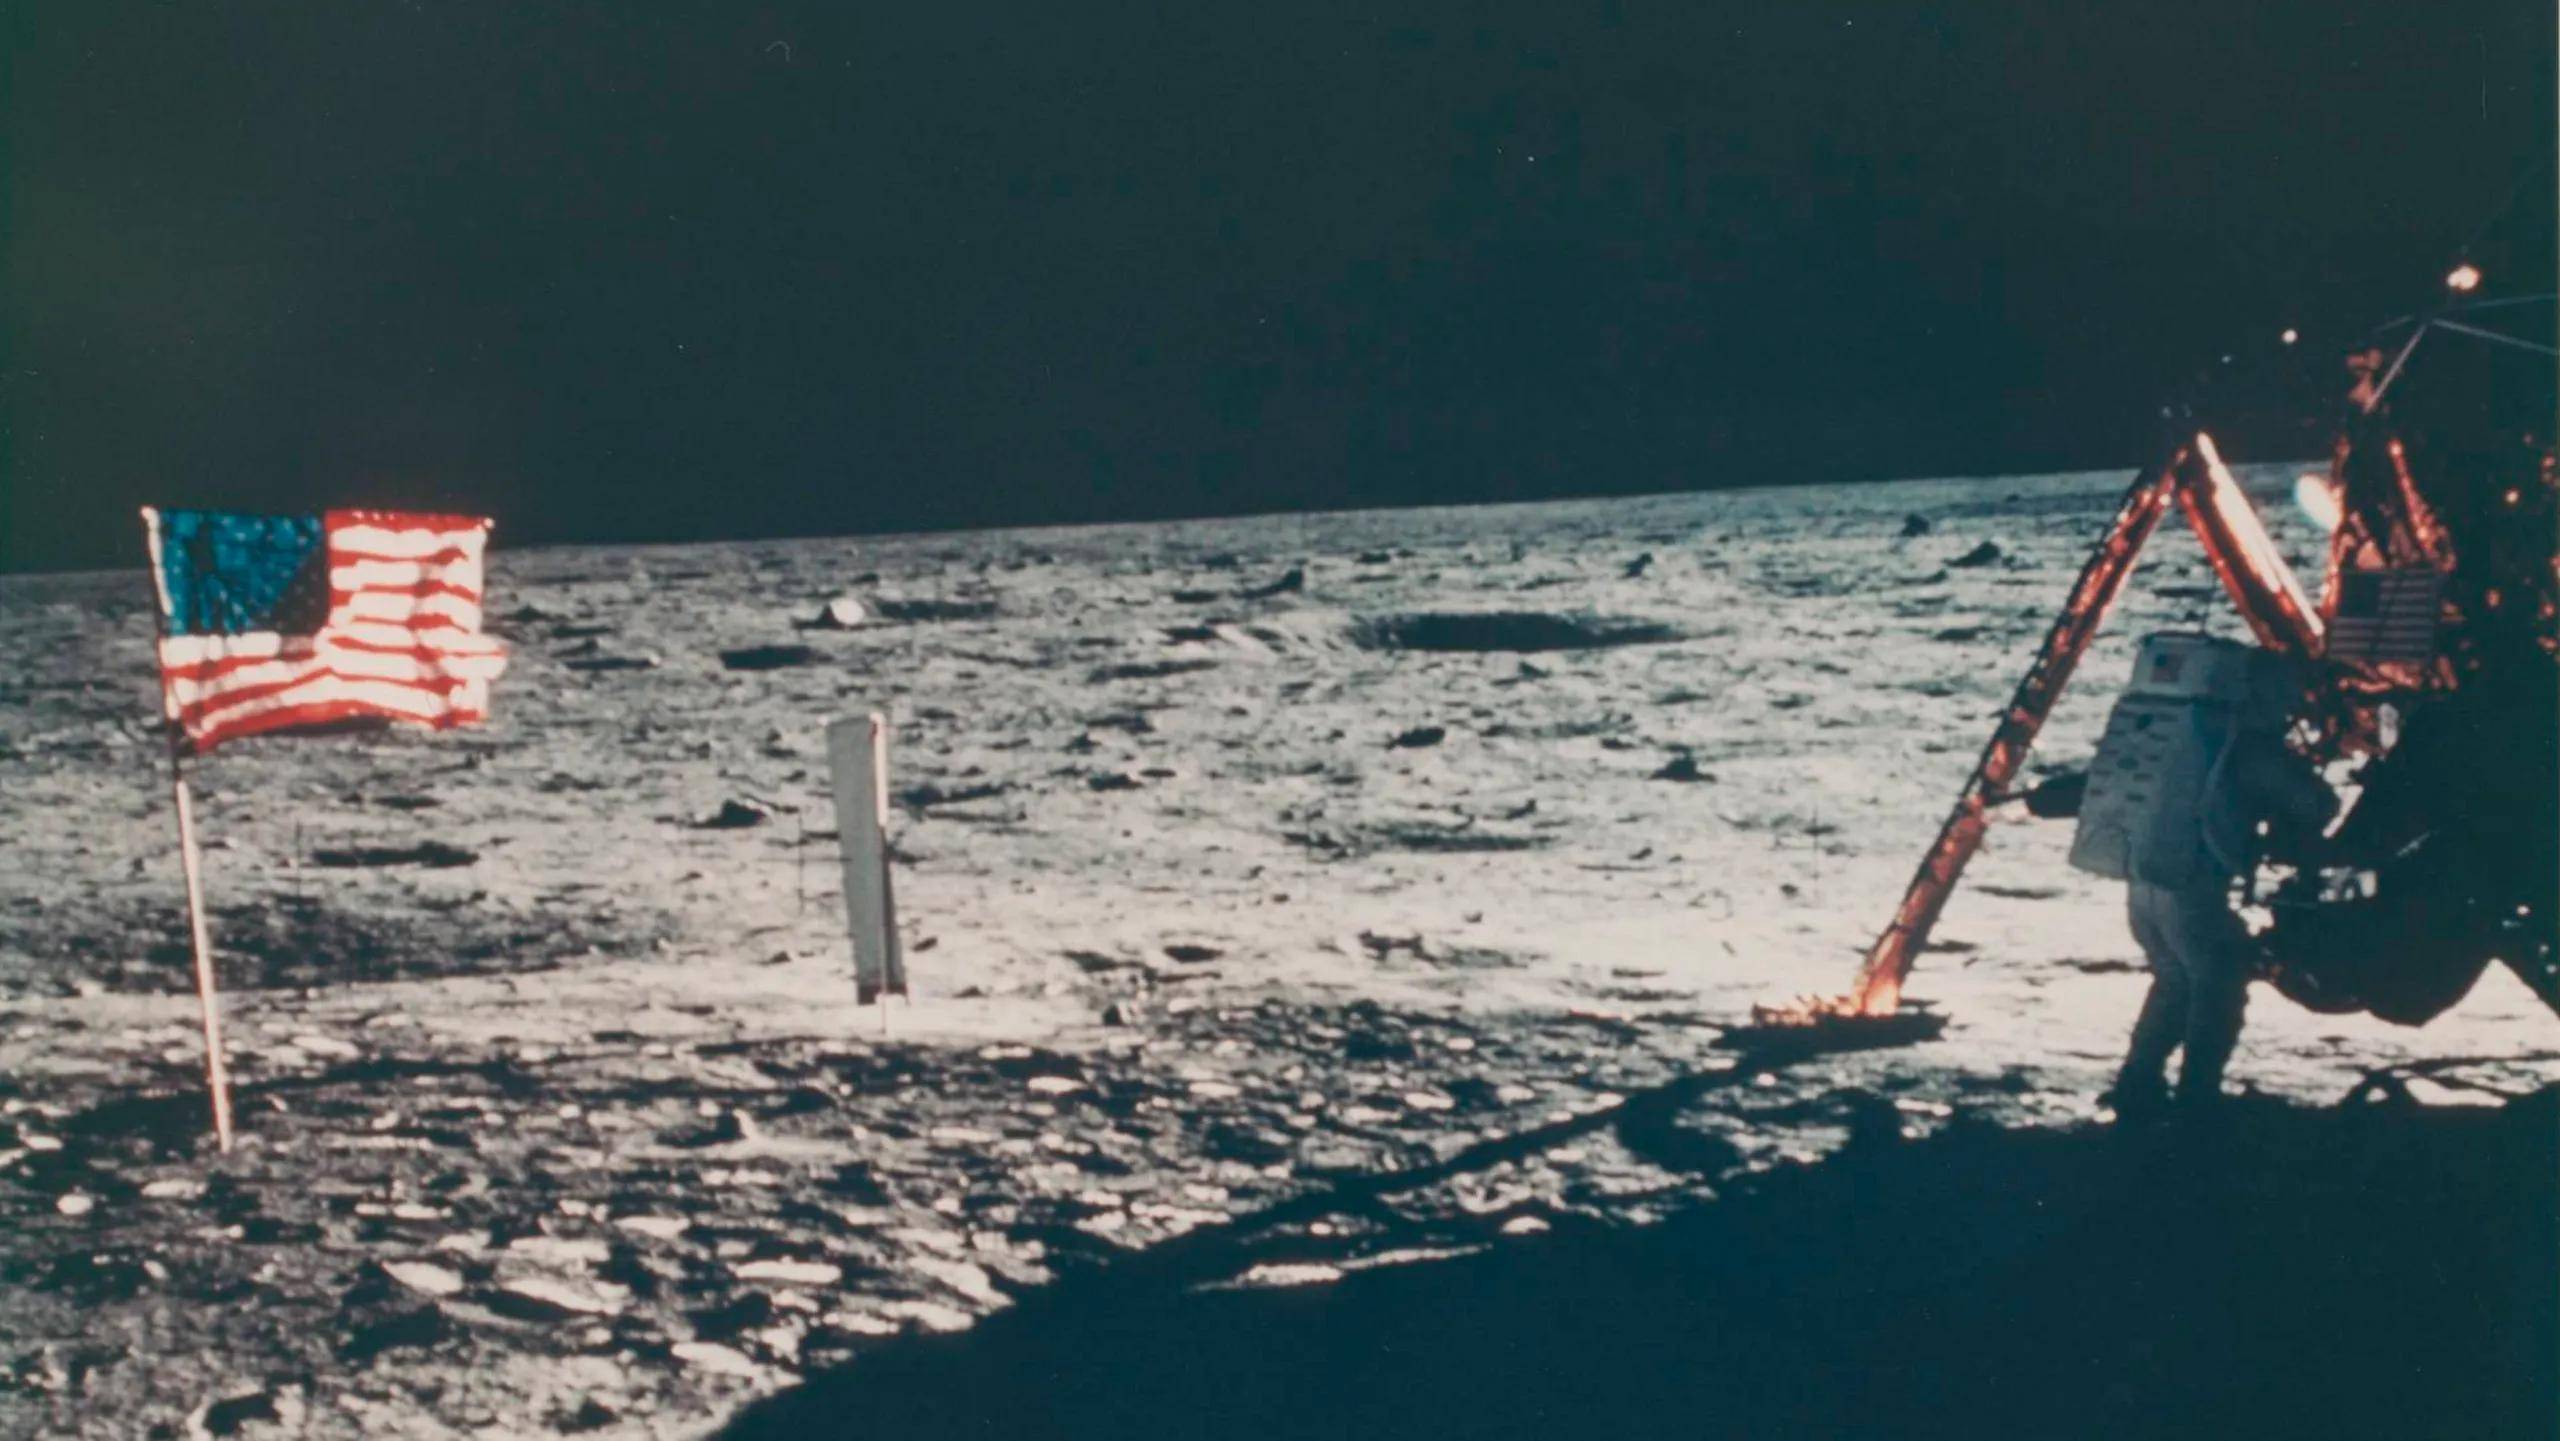 佳士得将拍卖唯一一张记录尼尔阿姆斯特朗月球行走的照片